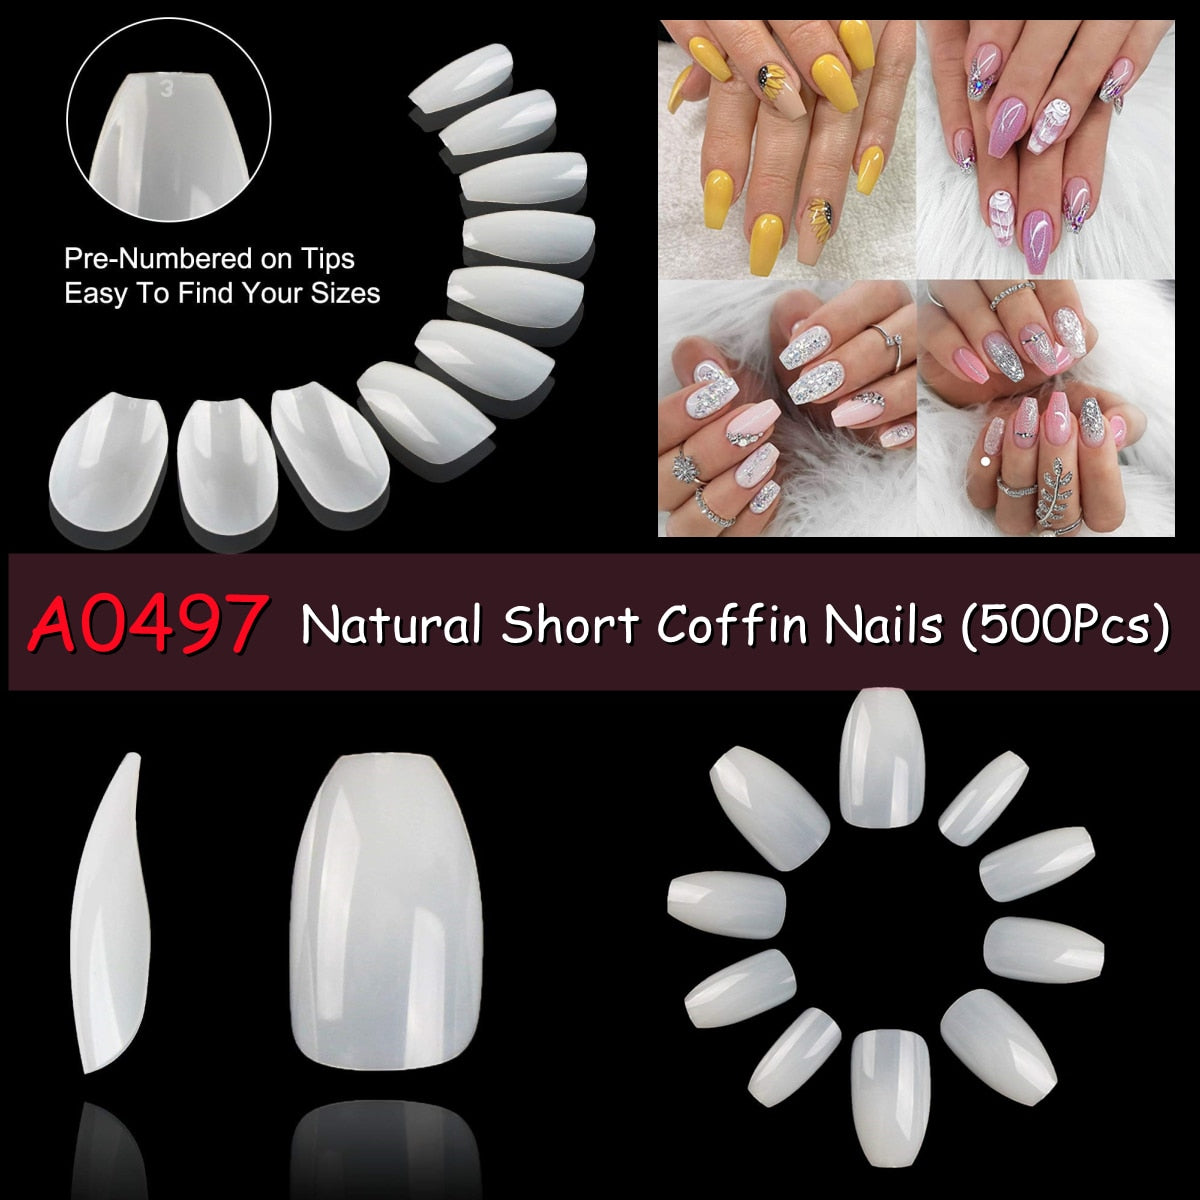 Makartt 500pcs Coffin Nails Long Ballerina False Nails Tips Clear Full Cover Ballet Acrylic Natural Fake Nails Press On Nail